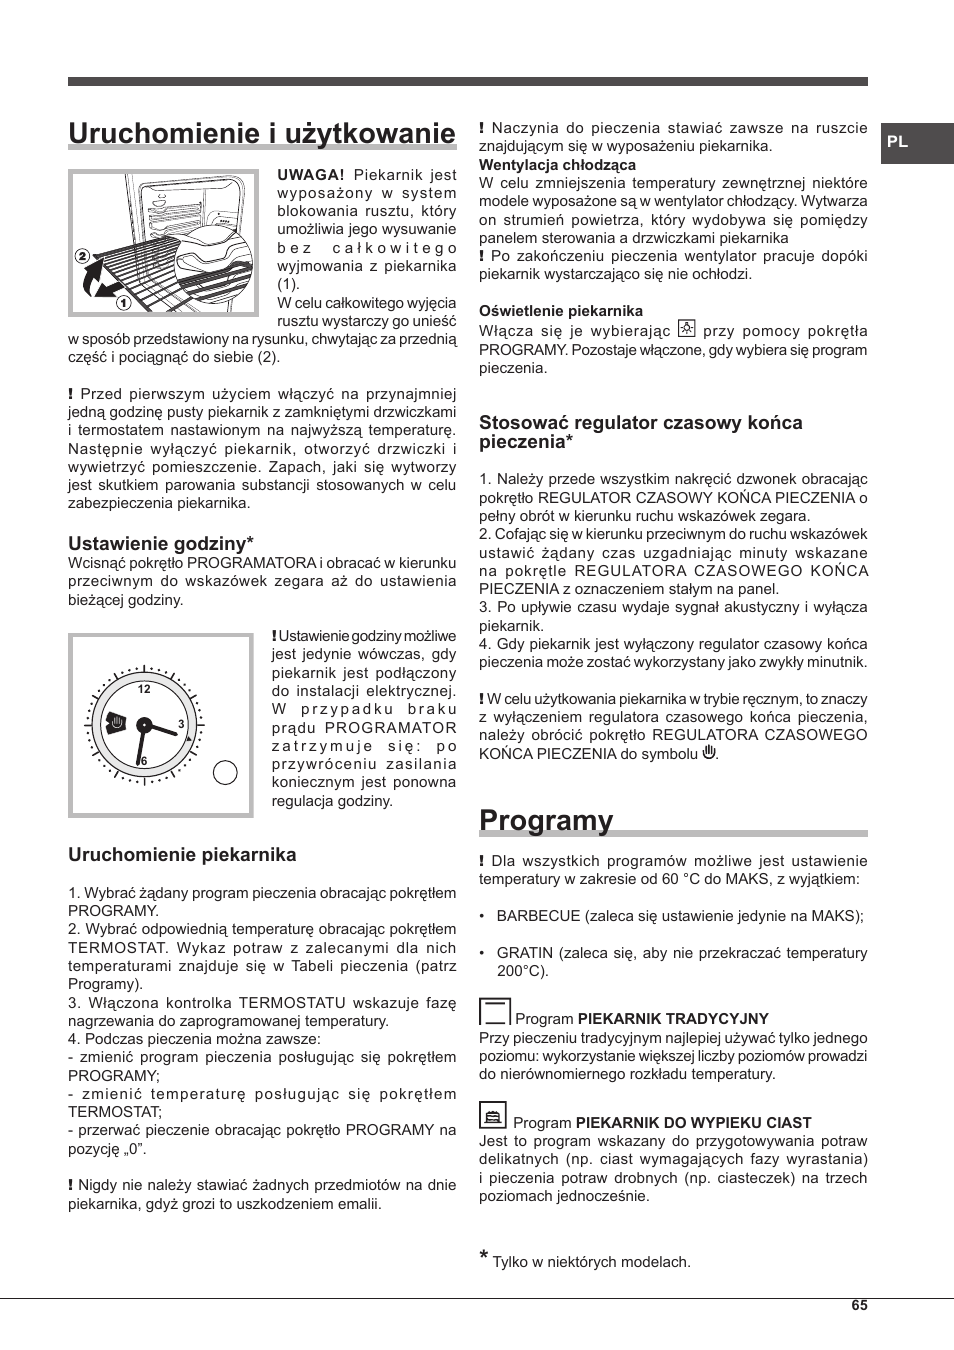 Uruchomienie i użytkowanie, Programy, Ustawienie godziny | Hotpoint Ariston  Tradición FT 95VC.1 (AN)-HA S User Manual | Page 65 / 72